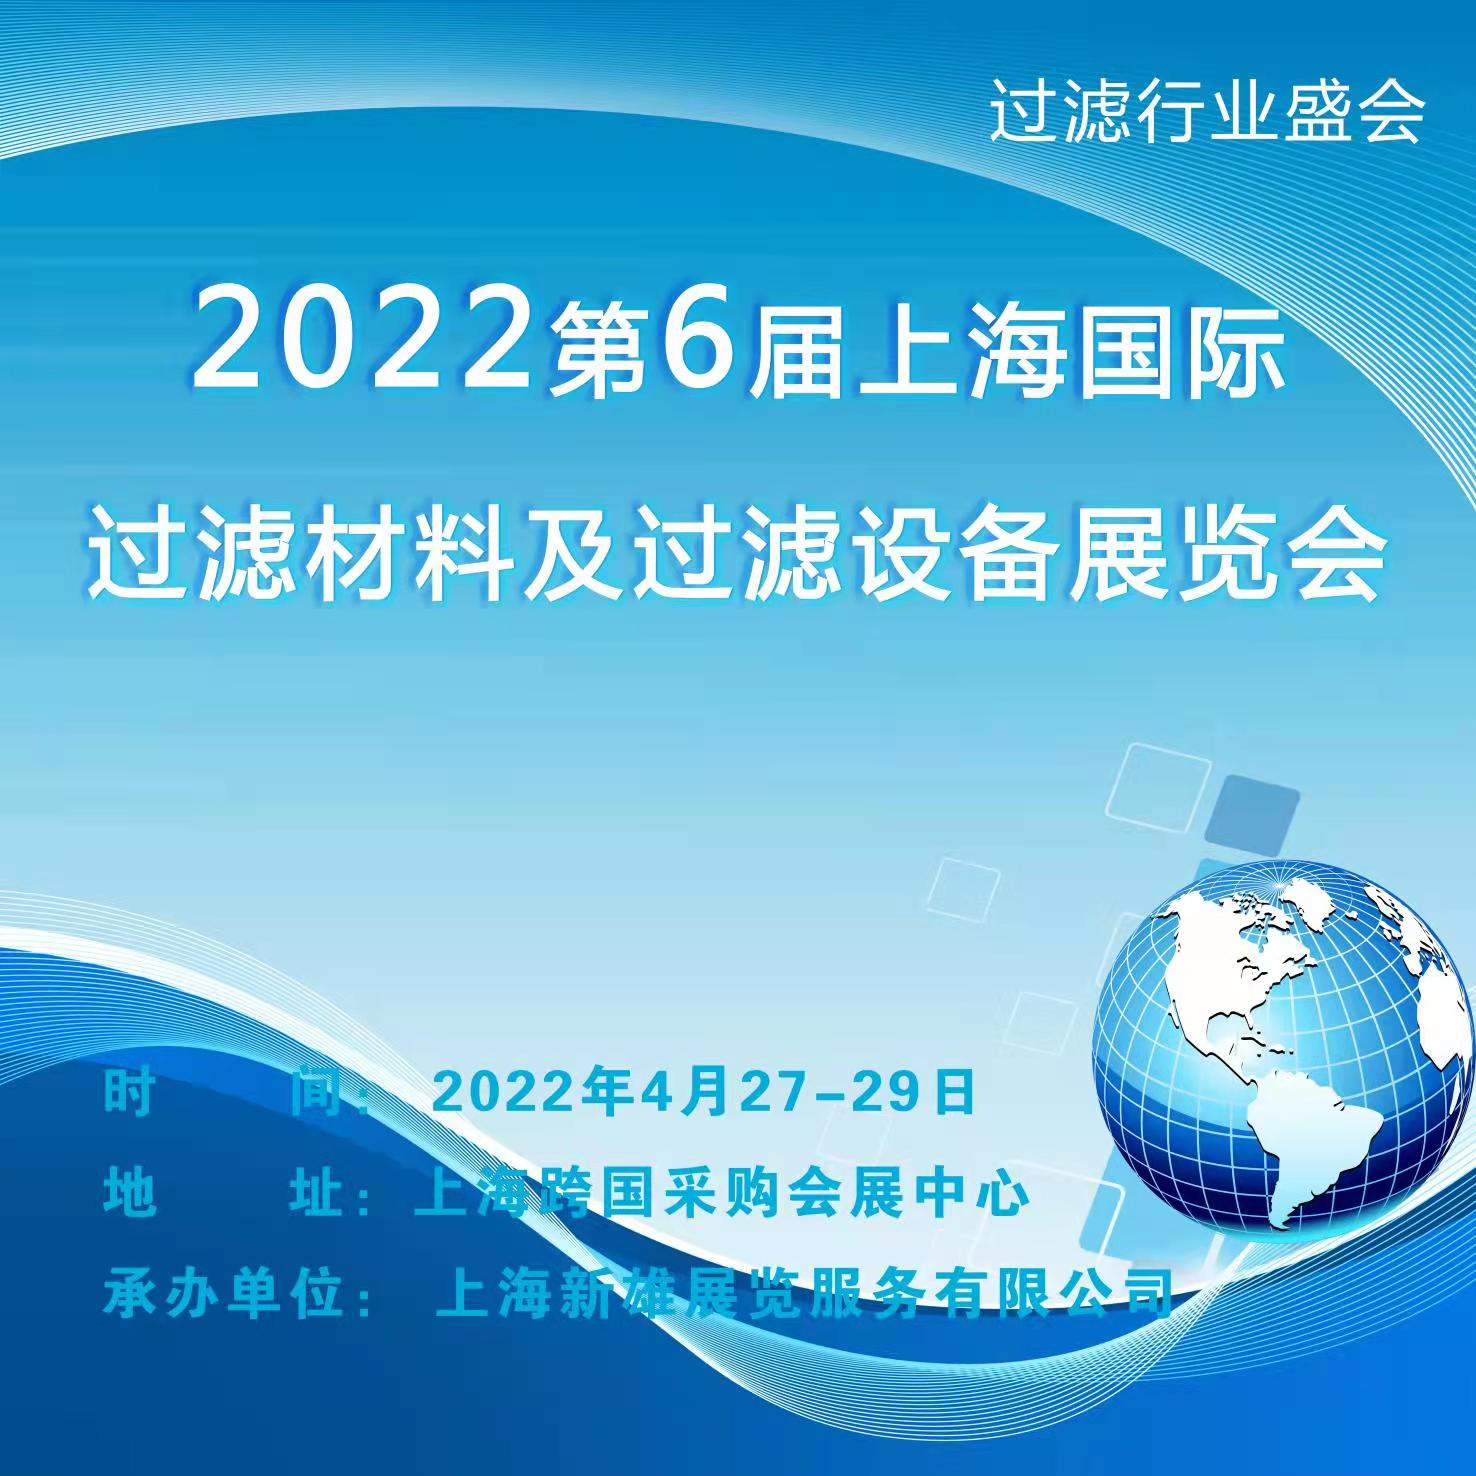 上海過濾材料新產品、新技術展覽會